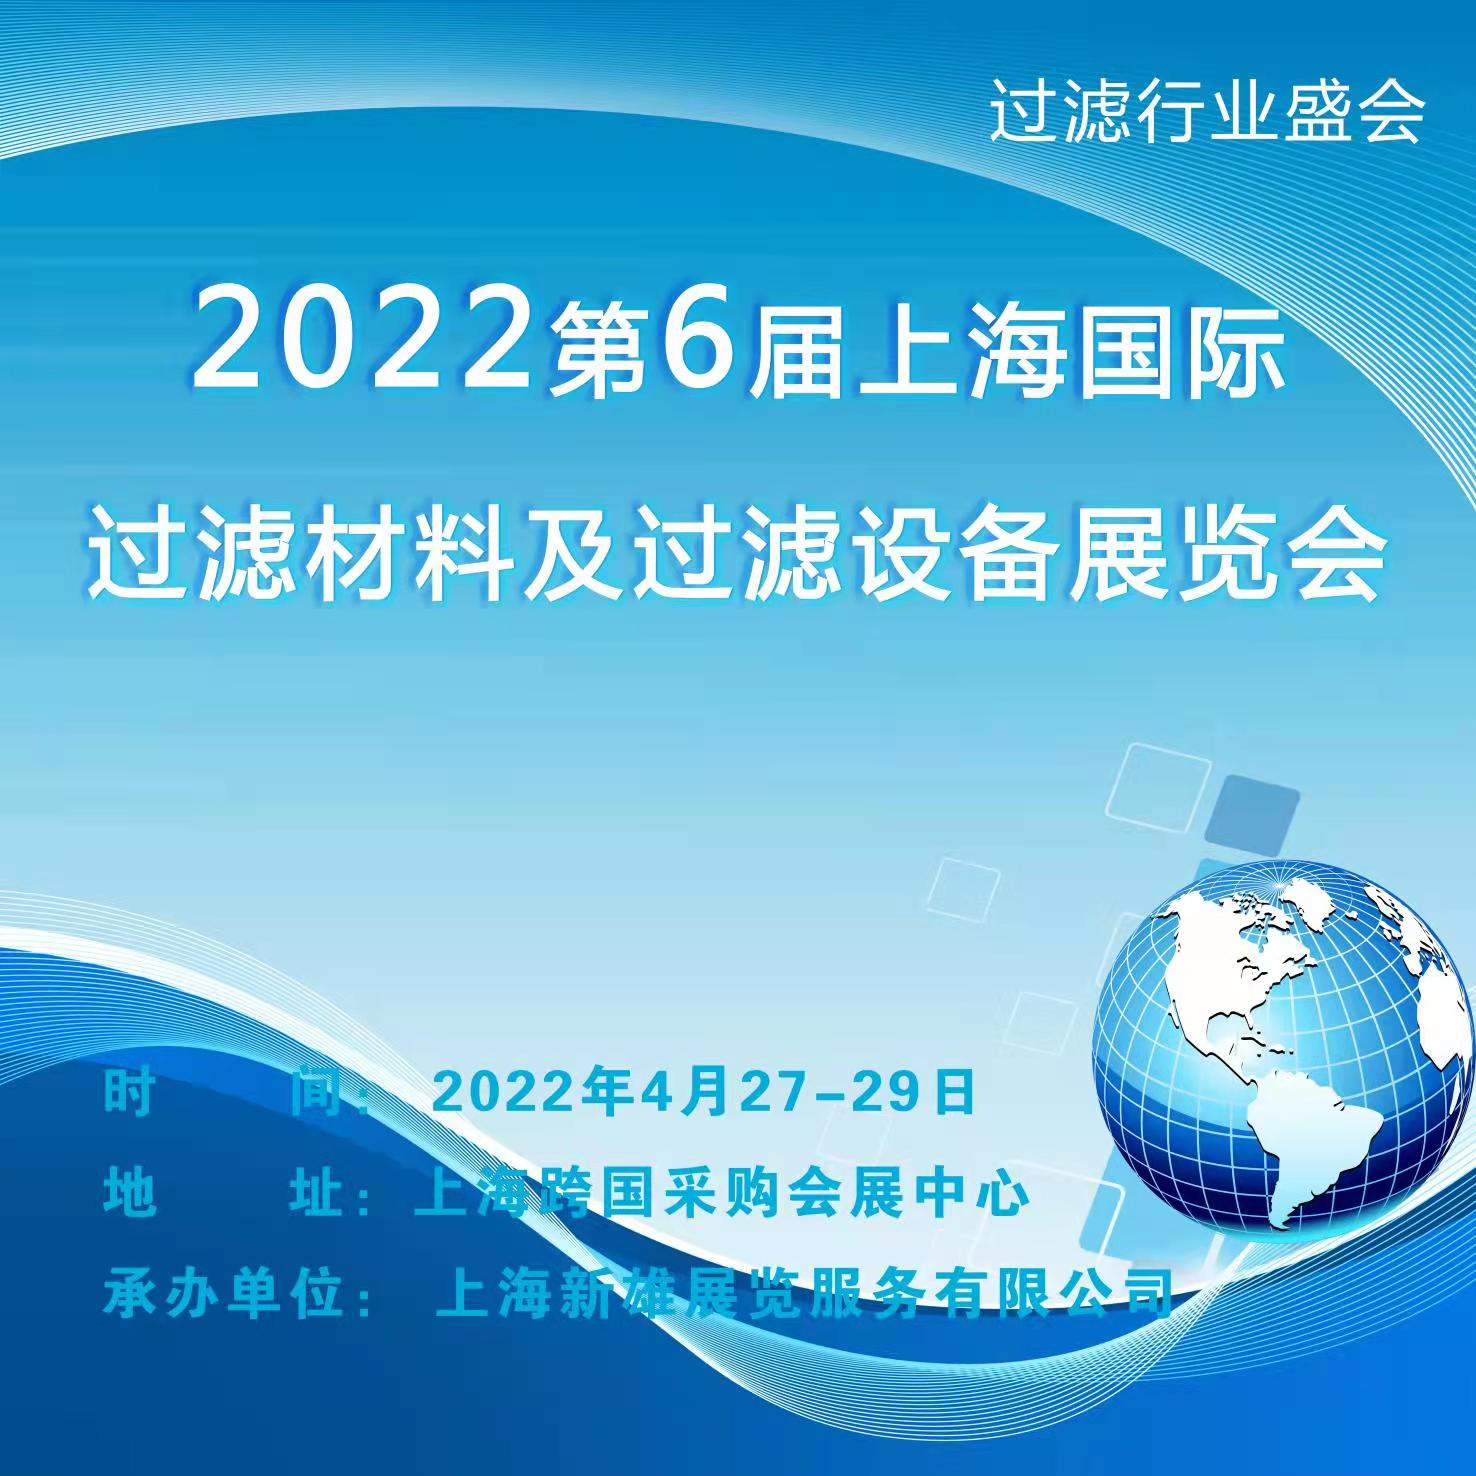 上海過濾材料新產品、新技術展覽會